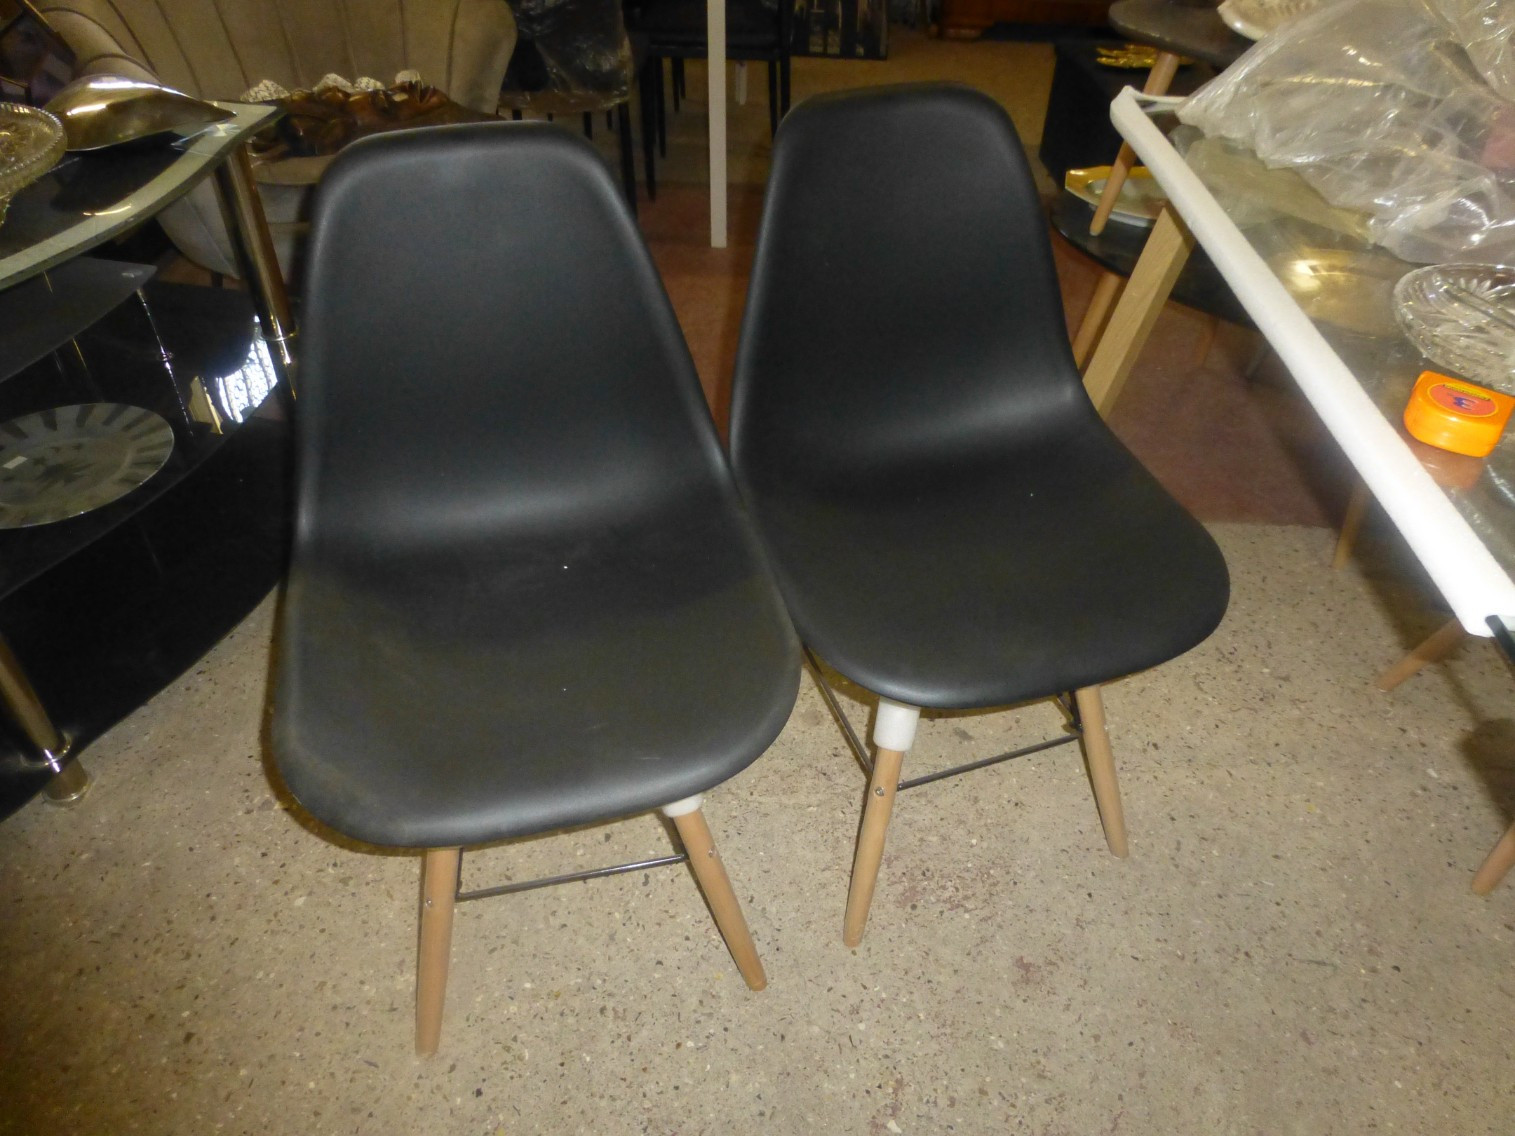 
                                                Meuble
                                                 4 chaises noires neuves, promotion